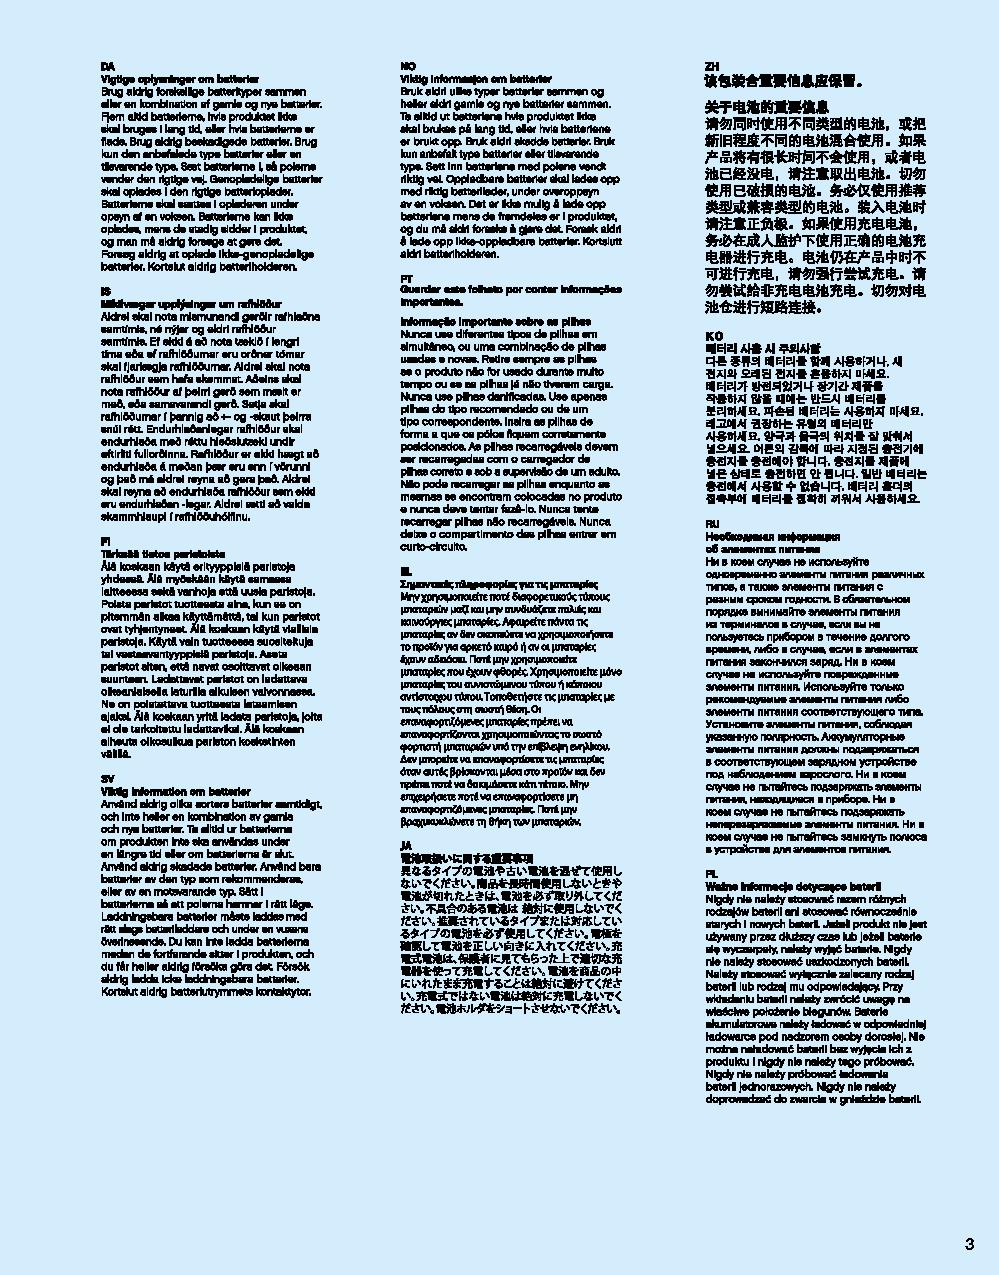 어벤져스 헐크버스터: 울트론 에디션 76105 레고 세트 제품정보 레고 조립설명서 3 page